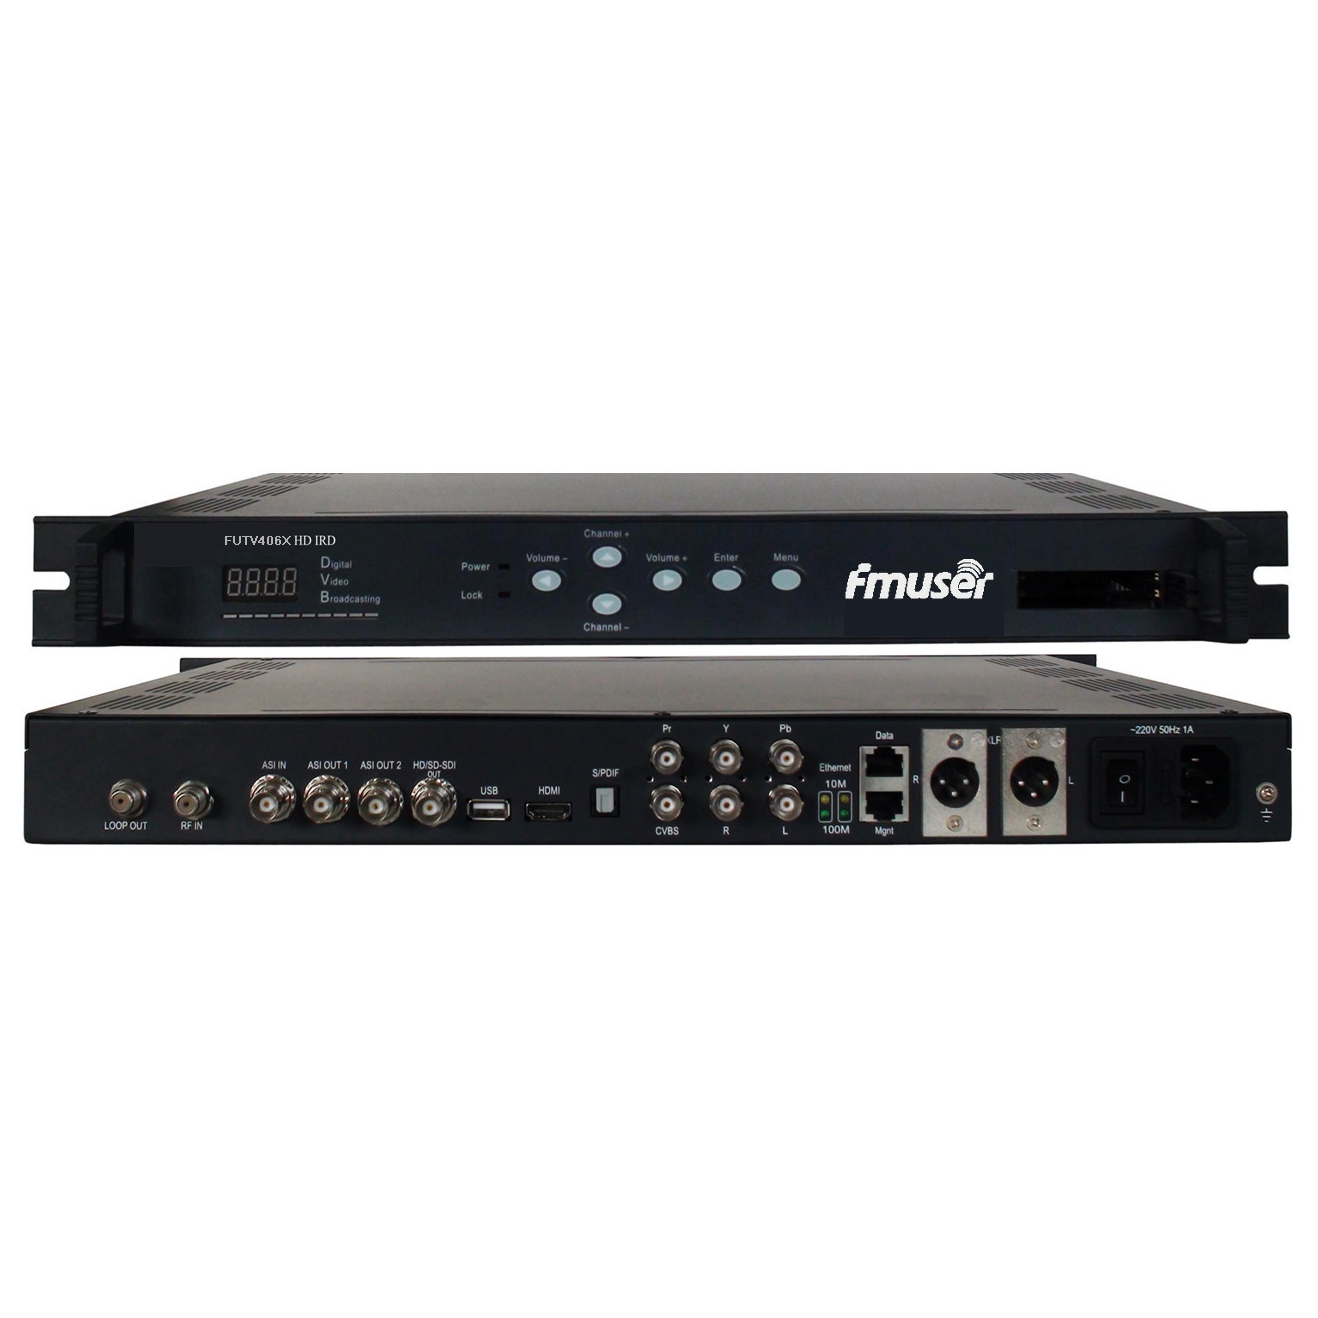 FMUSER FUTV406X HD ir (1 DVB-S / S2 / T / C, ISDB-T RF Antre, 1 asi IP Nan, 2 1 asi IP Sòti, HDMI SDI cvbs XLR Out) ak Mux & bis